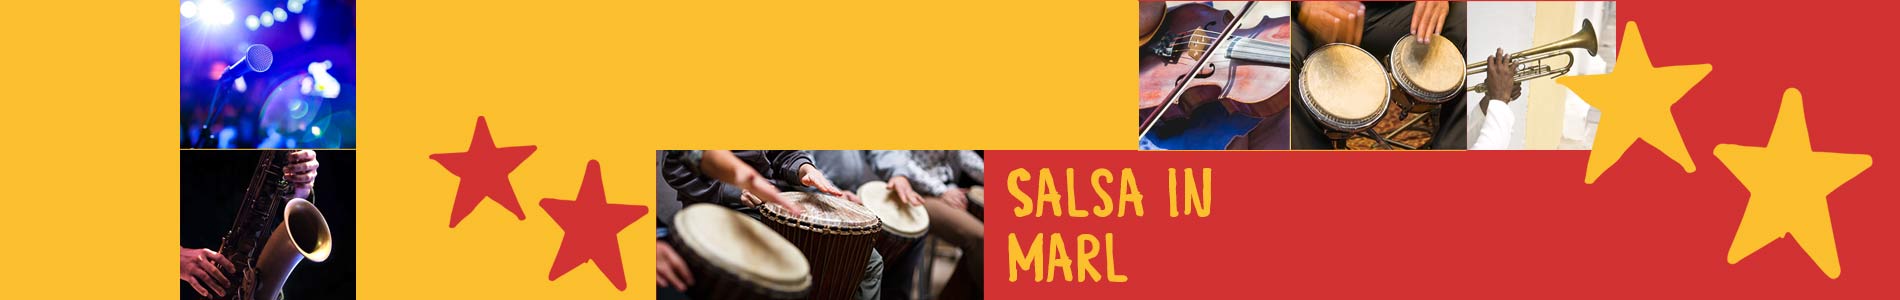 Salsa in Marl – Salsa lernen und tanzen, Tanzkurse, Partys, Veranstaltungen